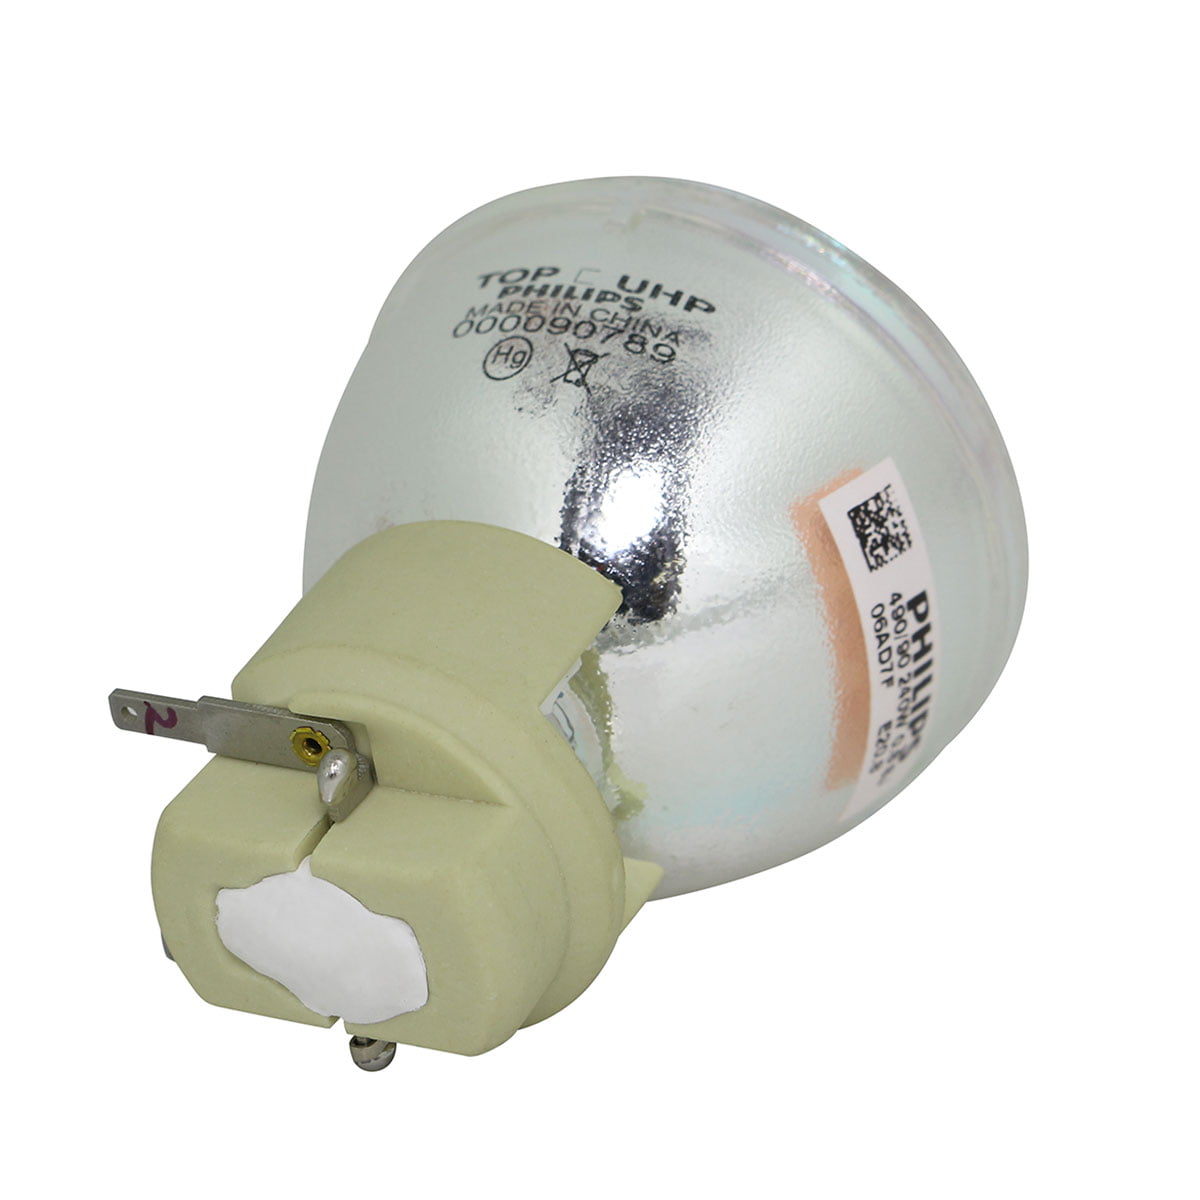 NEW ORIGINAL PROJECTOR LAMP BULB FOR VIEWSONIC RLC-080 RLC080 PJD8333S PJD8633WS 